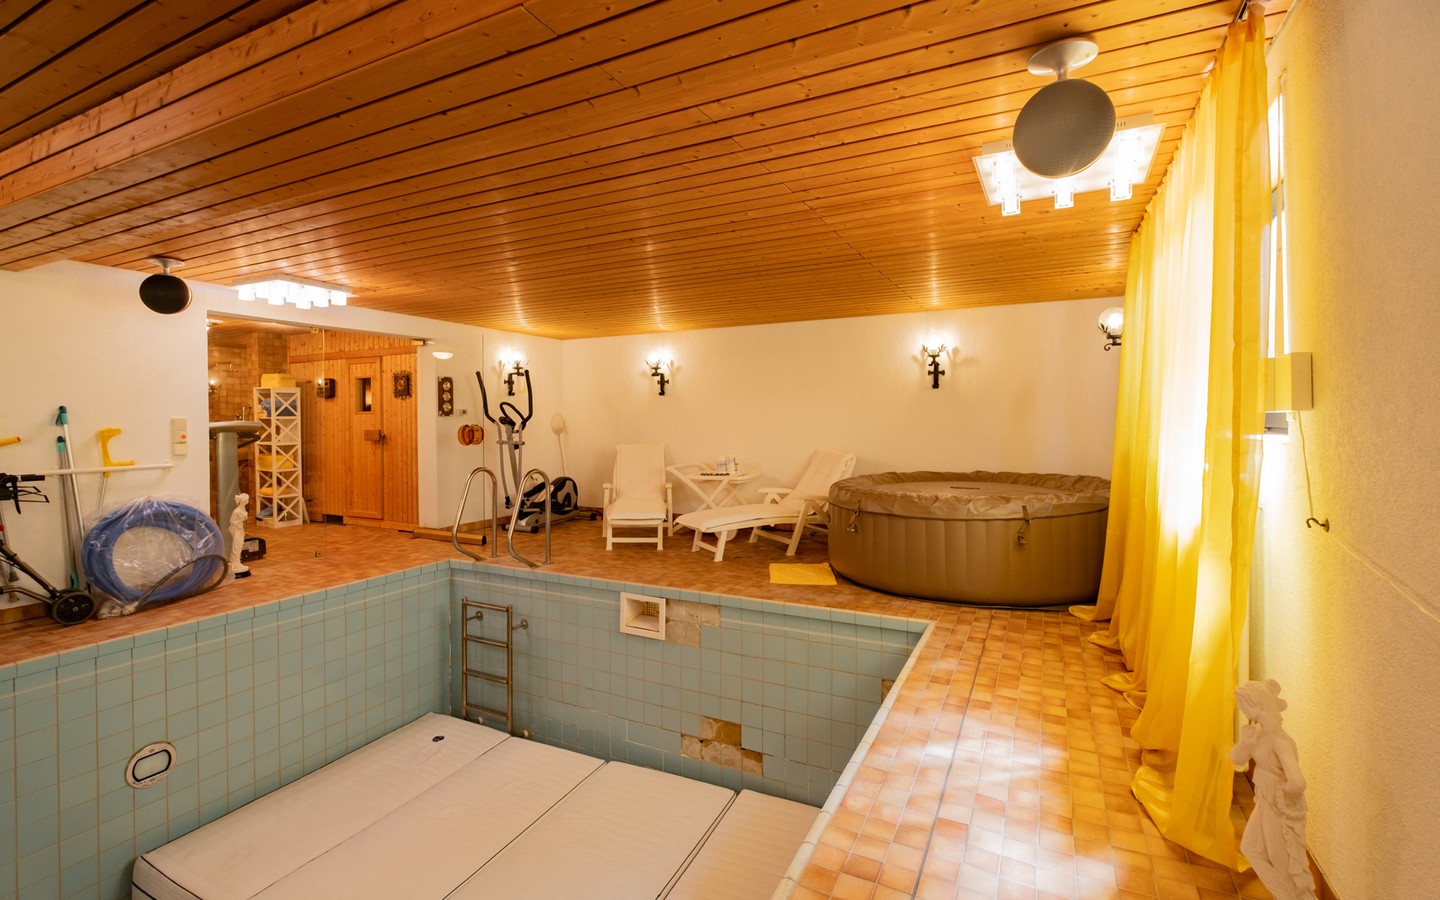 UG Schwimmbad - Emmertsgrund: ein außergewöhnliches Haus mit Einliegerwohnung und überraschenden Besonderheiten